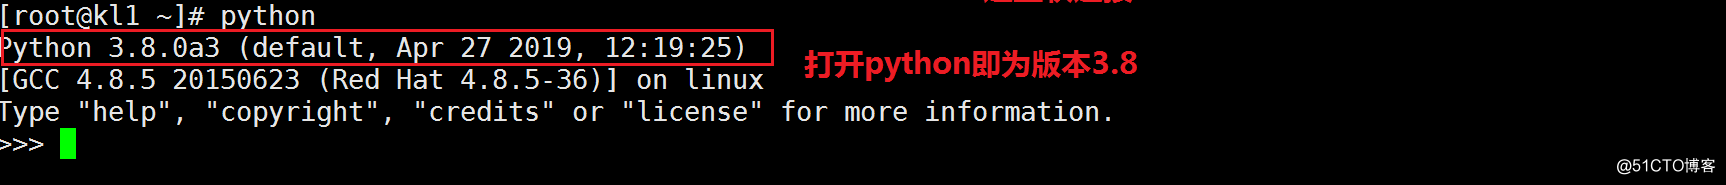 記一次阿裏雲服務器安裝Python的血淚史